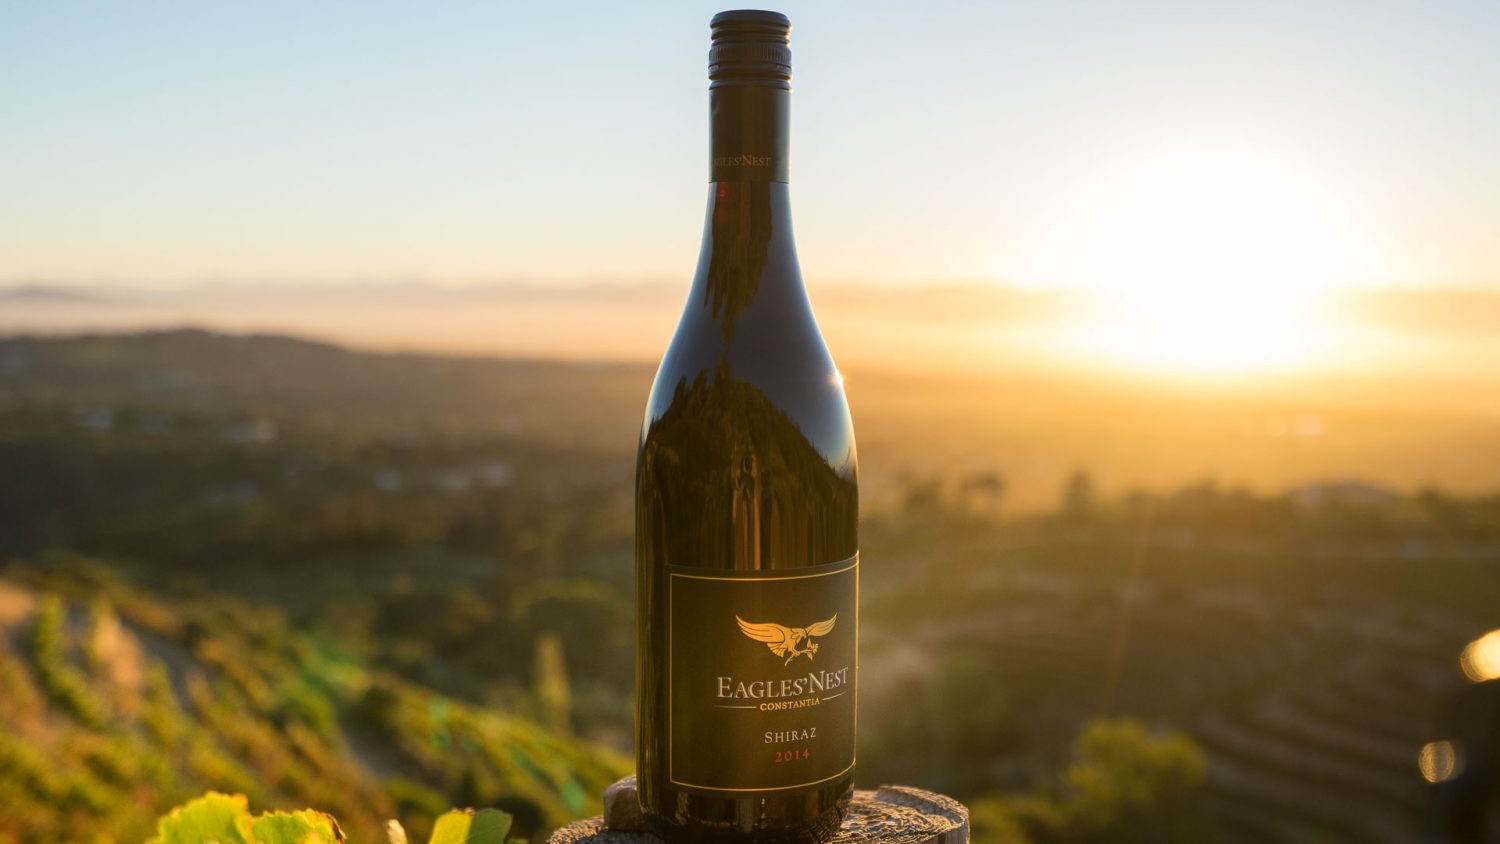 Bottle of Eagles' Nest wine